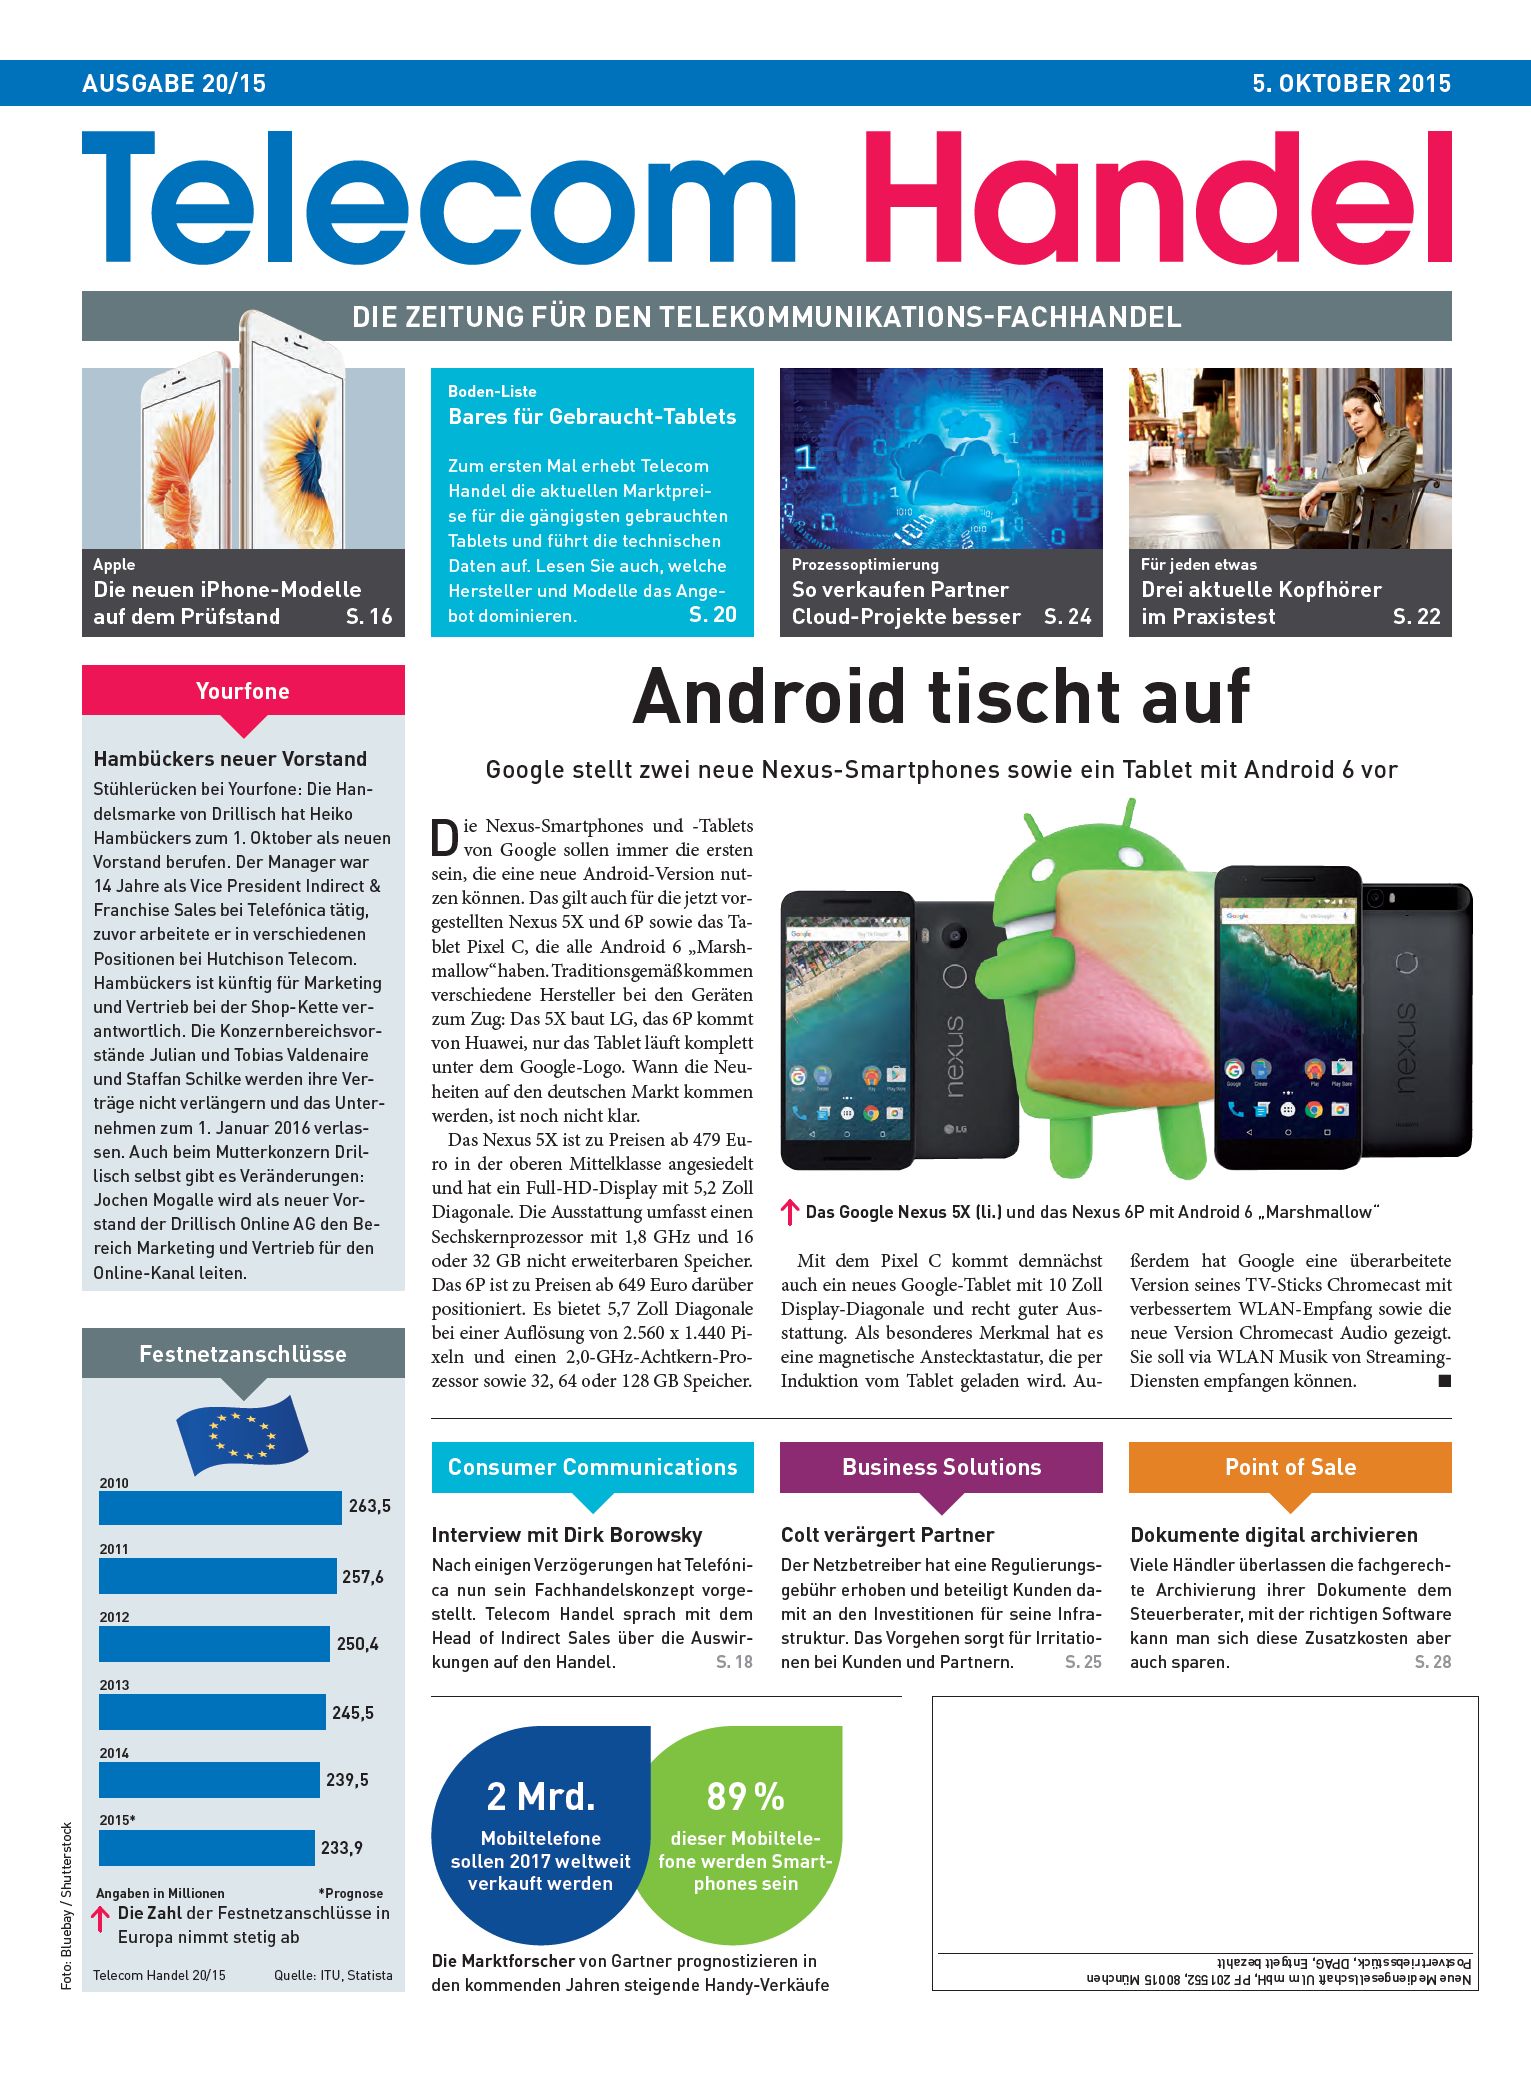 Telecom Handel Ausgabe 20/2015